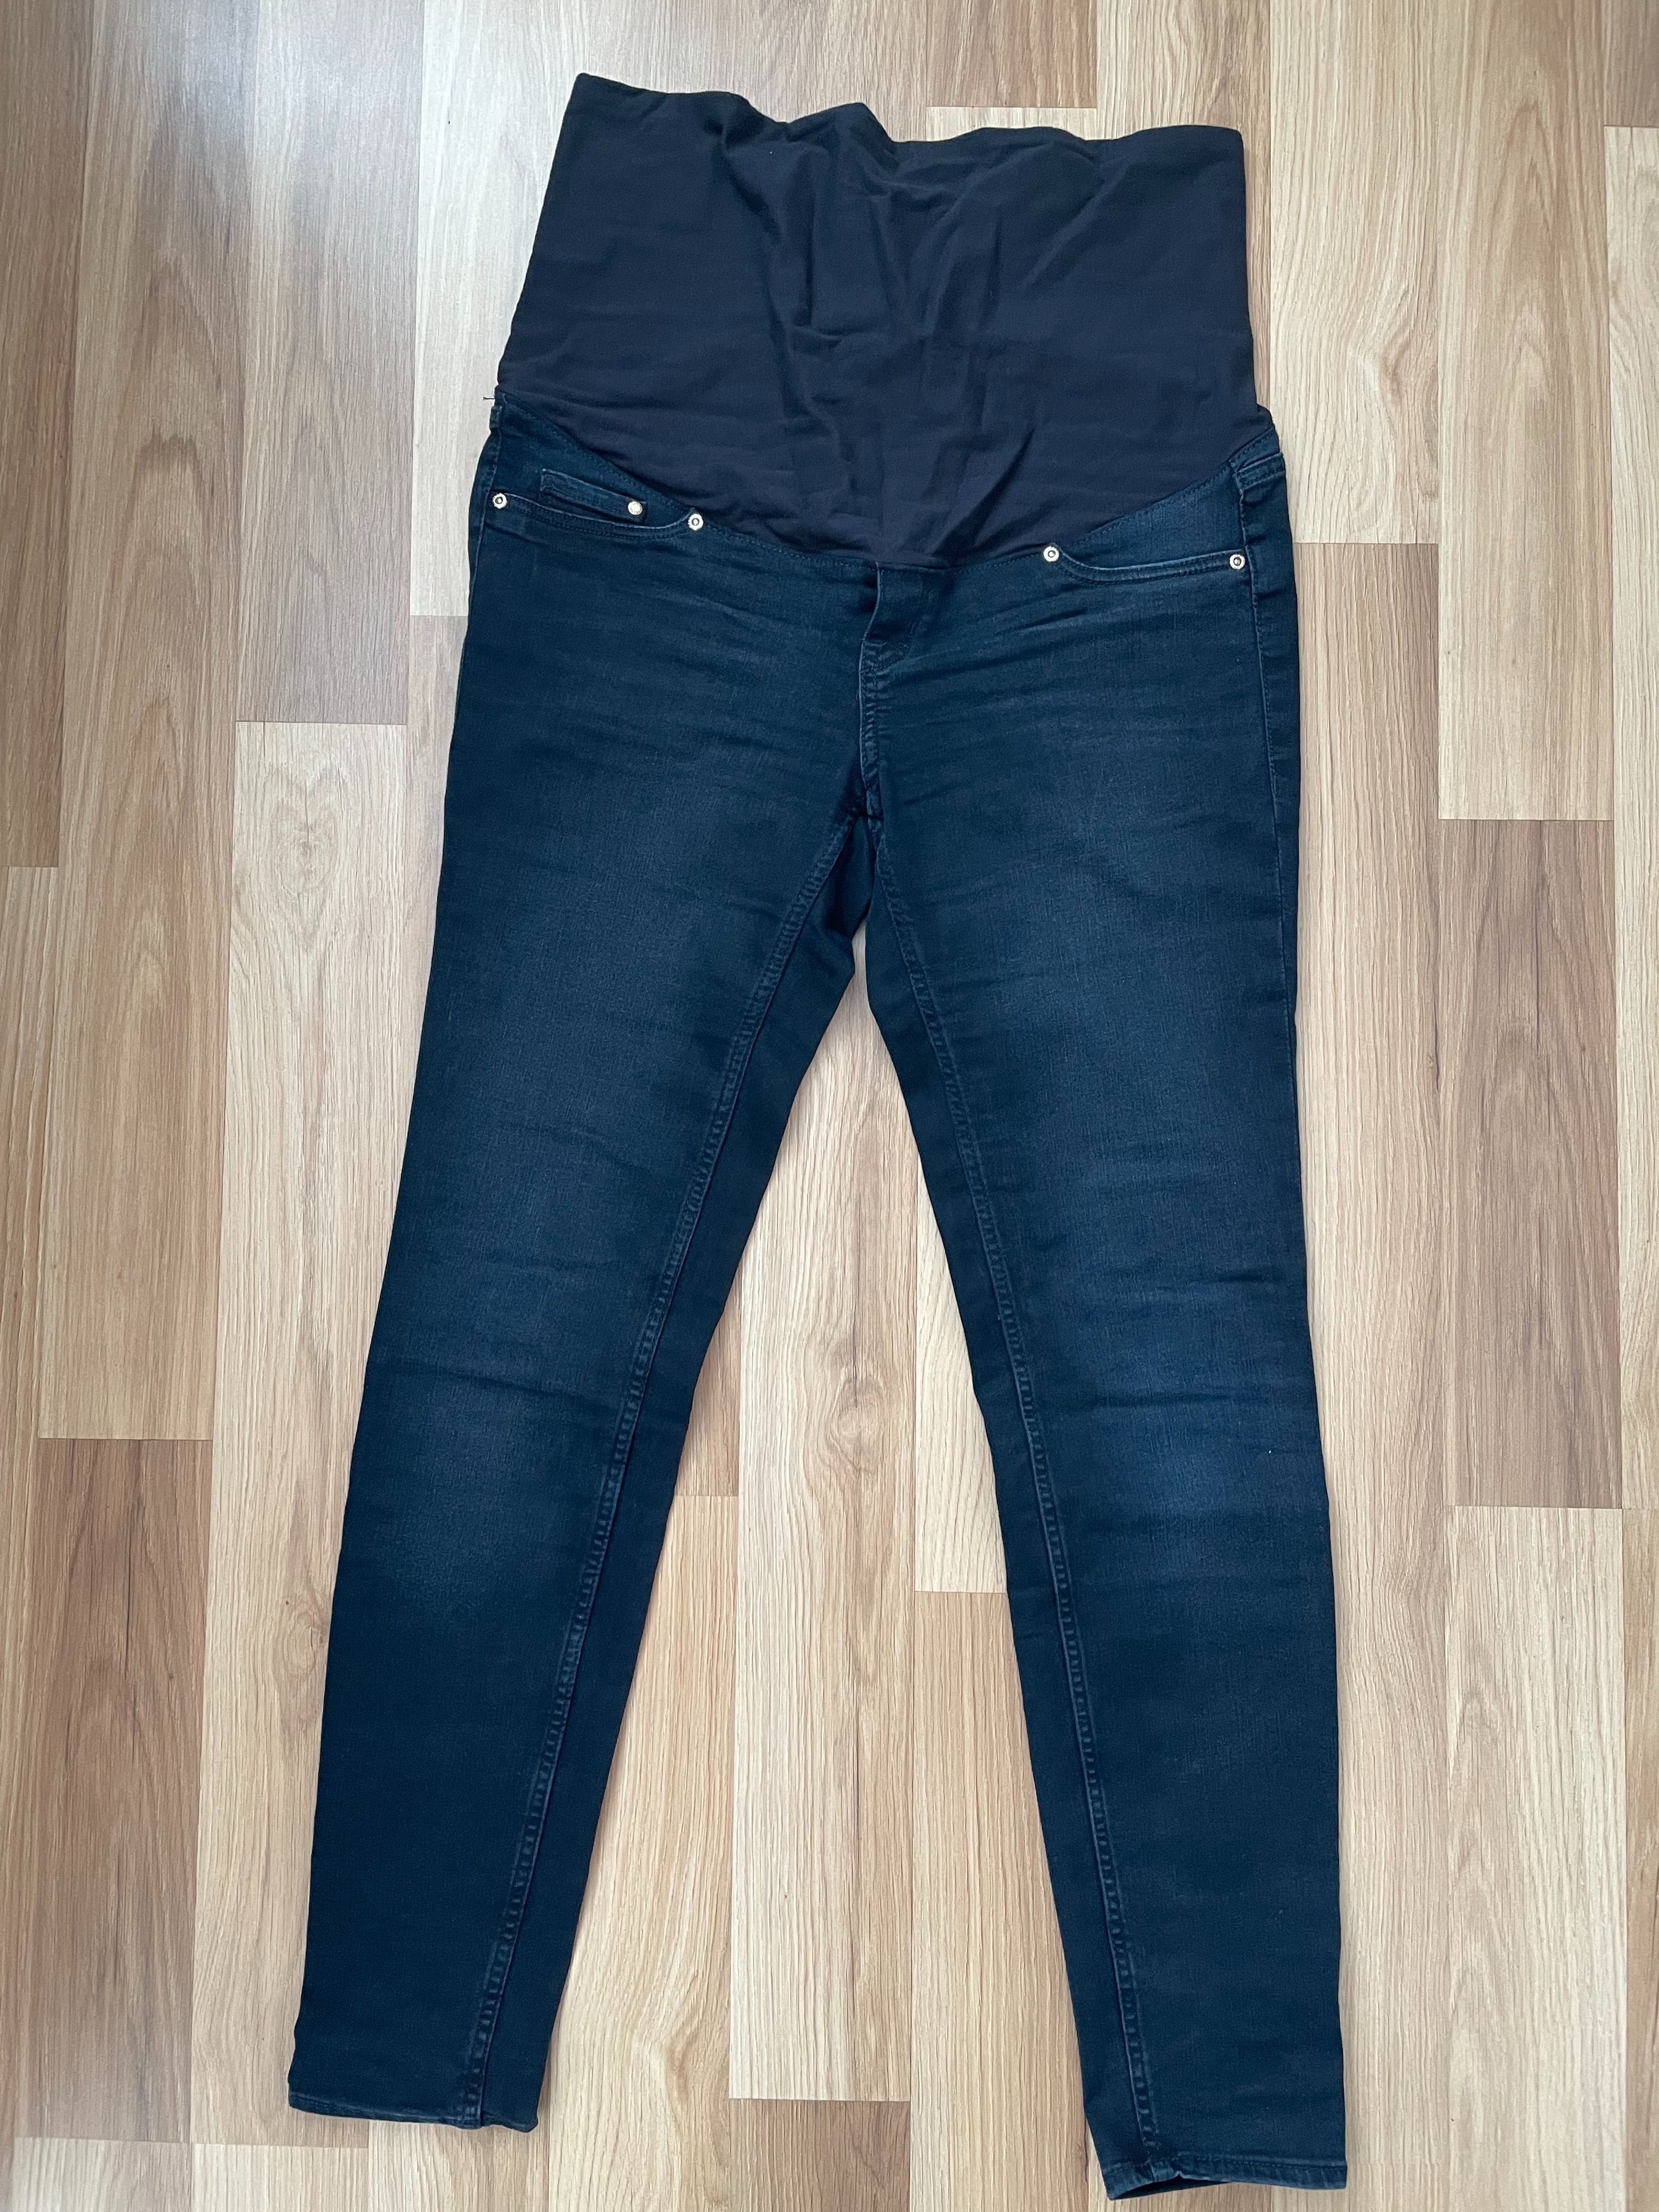 Nowe spodnie ciążowe H&M Mama rozm. 42 M/L jeans ciemny rurki